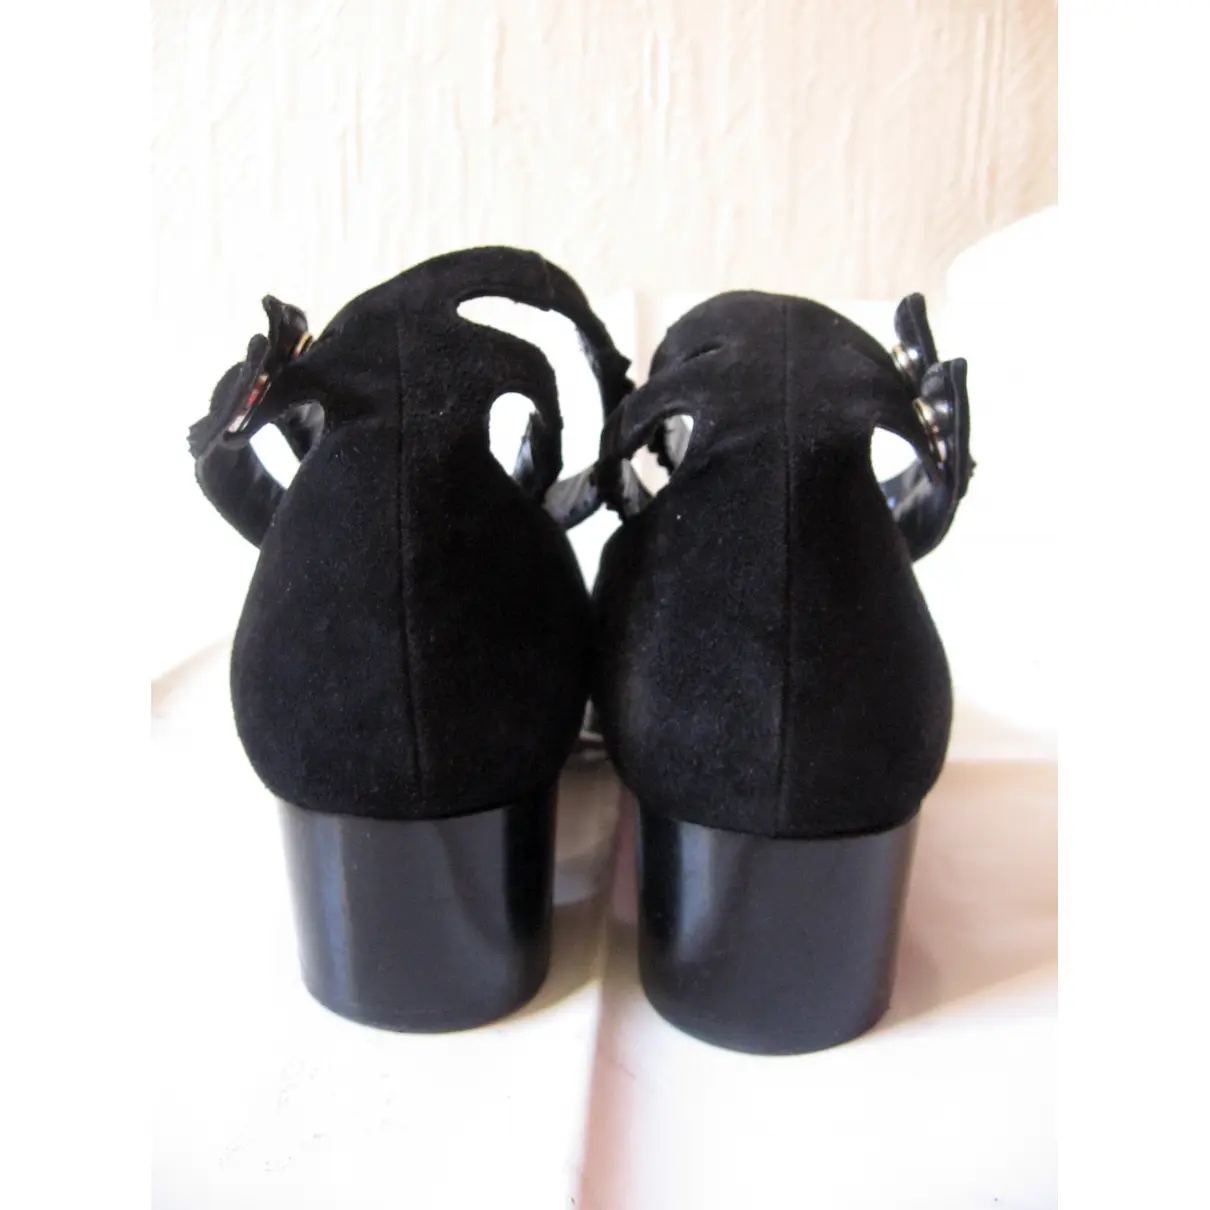 Buy Karine Arabian Leather heels online